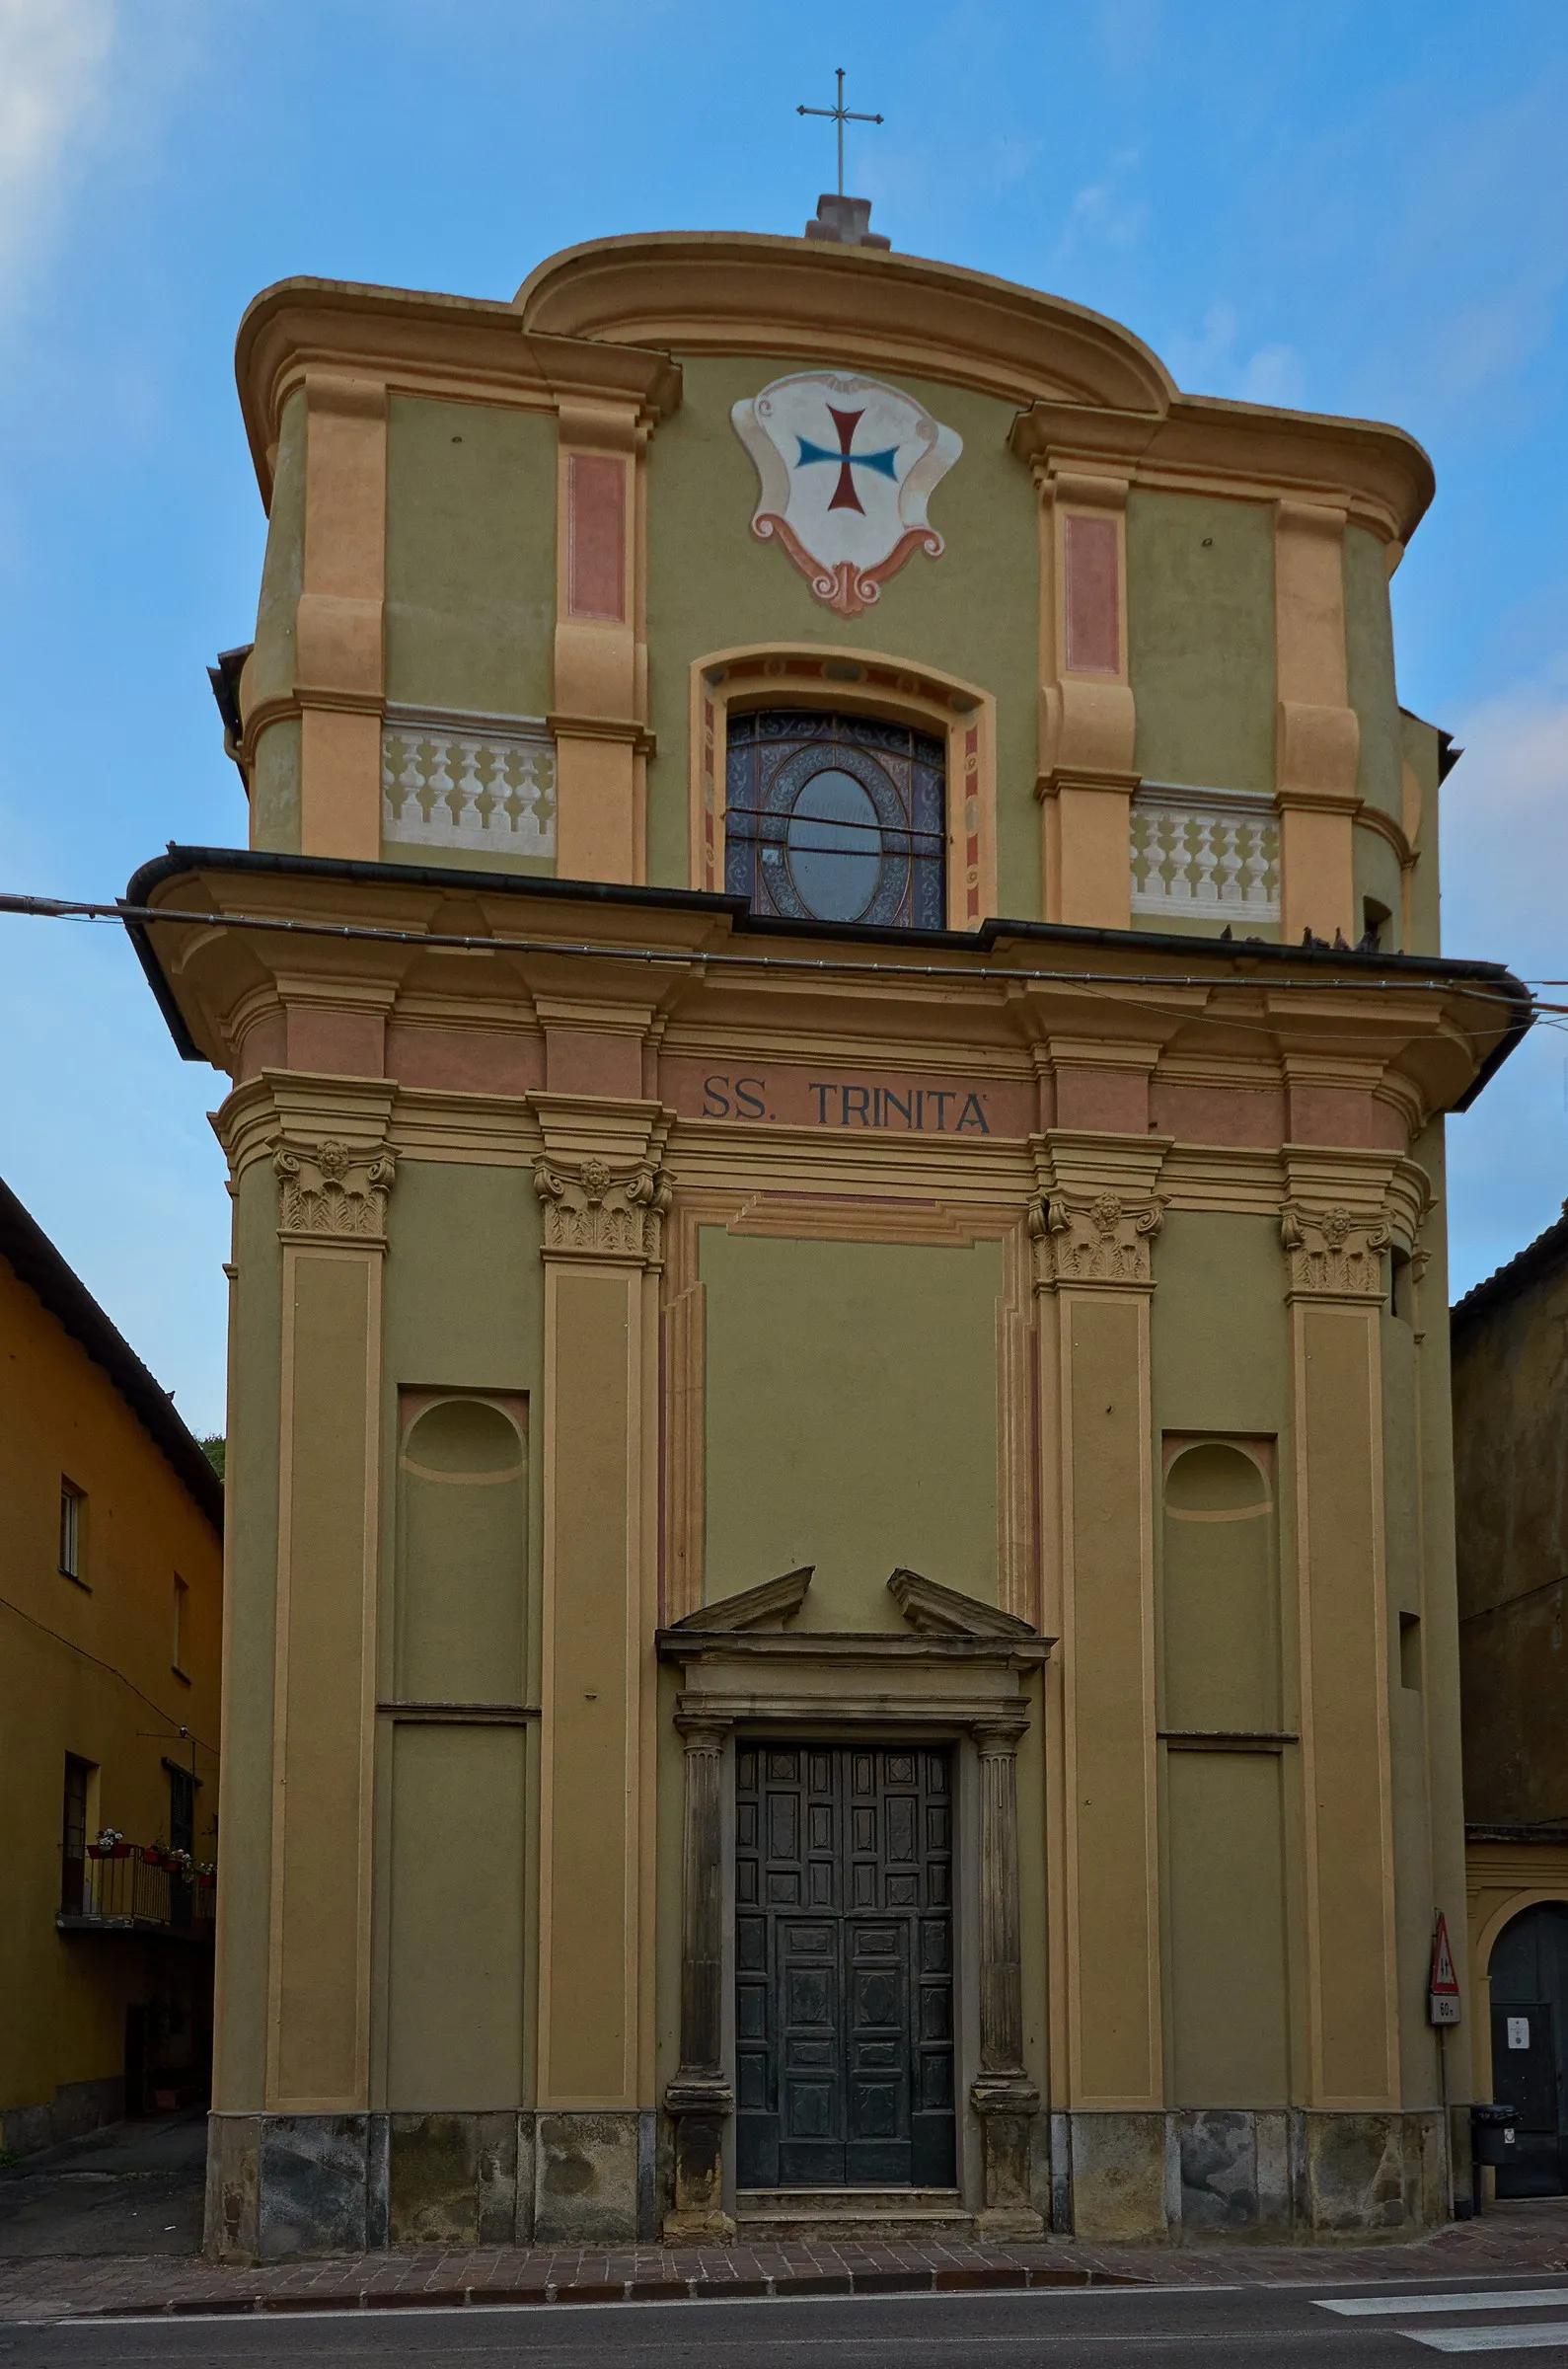 Image of Serravalle Scrivia